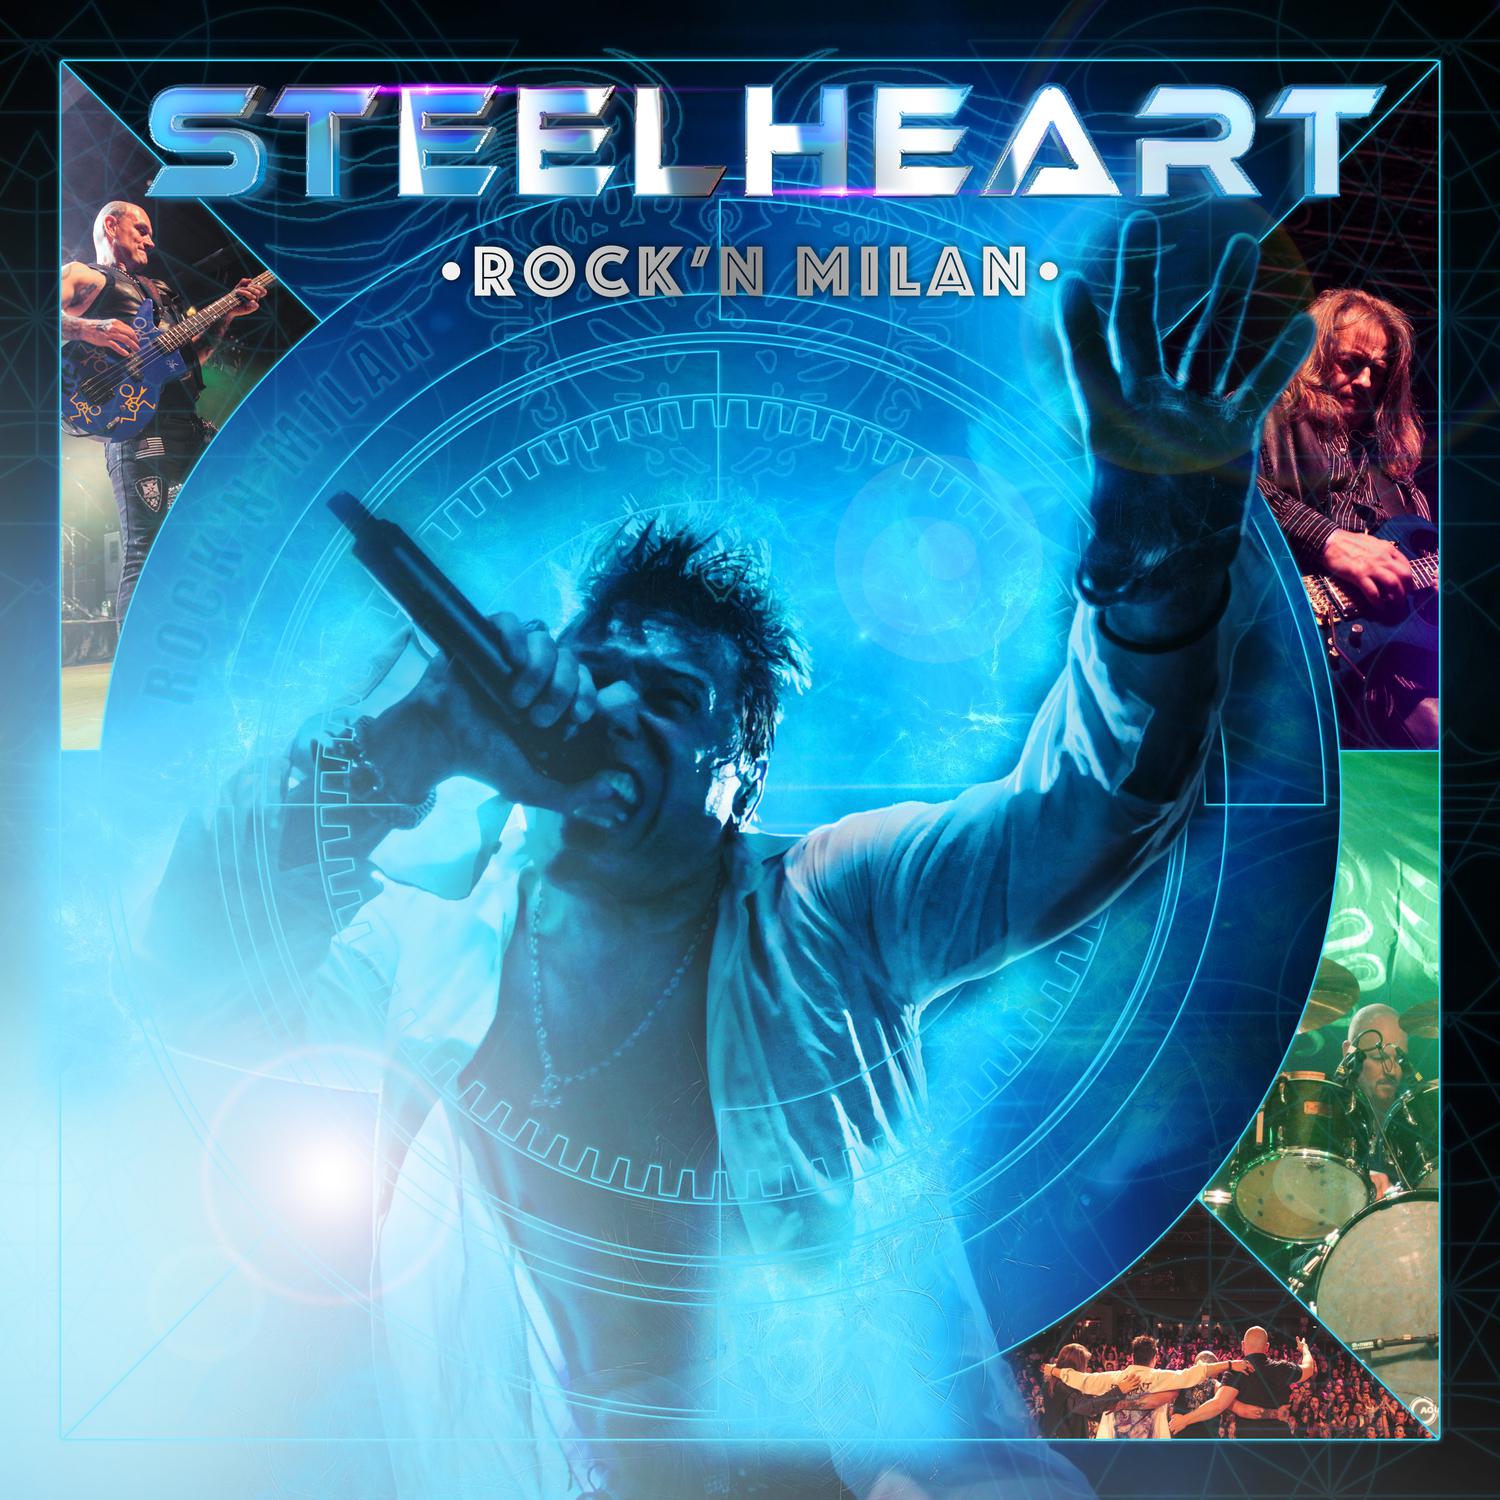 Steelheart - Like Never Before (Live)